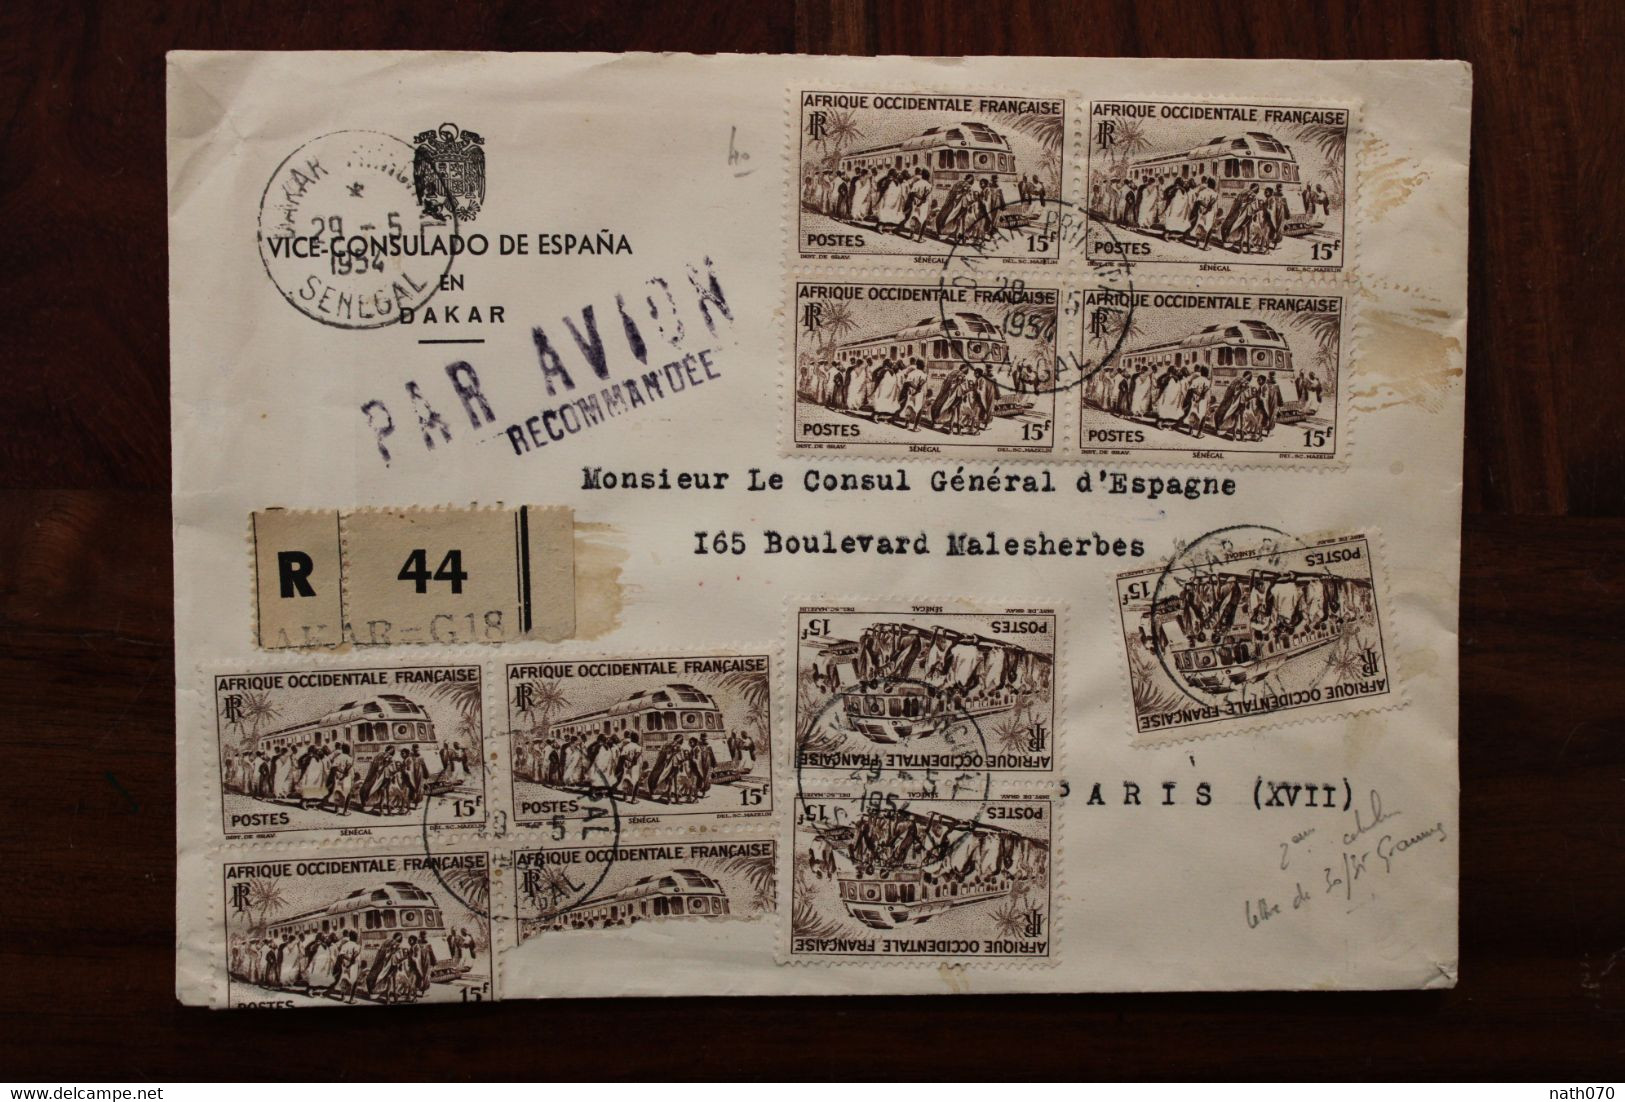 1954 SENEGAL France Enveloppe Consulado Espana Spain Espagne Cover Air Mail Colonies AOF Recommandé Registered R - Briefe U. Dokumente